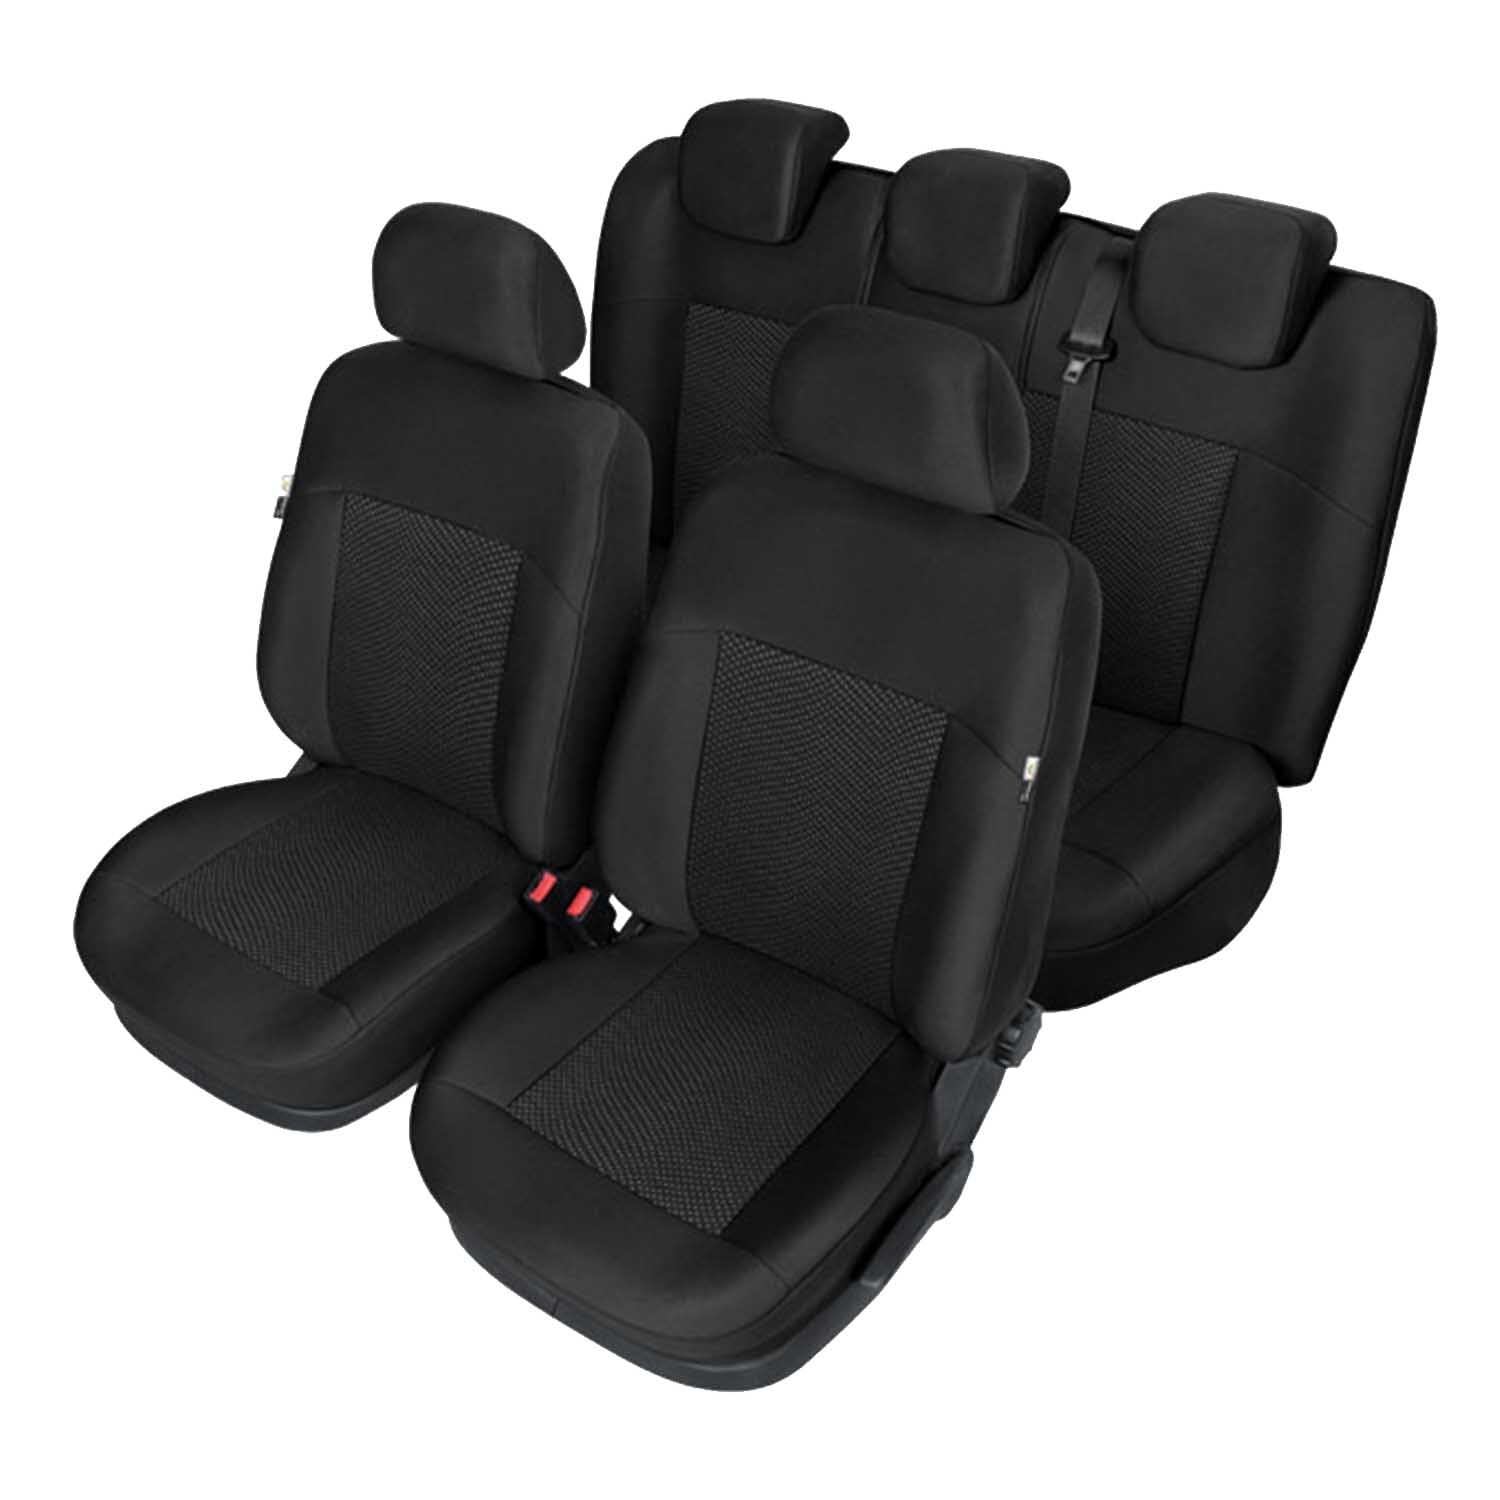 Autositzbezüge Autositzschoner Sitzbezüge Kompatibel mit Hyundai Getz Auto Sitzbezug Schwarz Autositzauflage Autositz Sitzauflagen Tuning Auto Zubehör Innenraum von Saferide